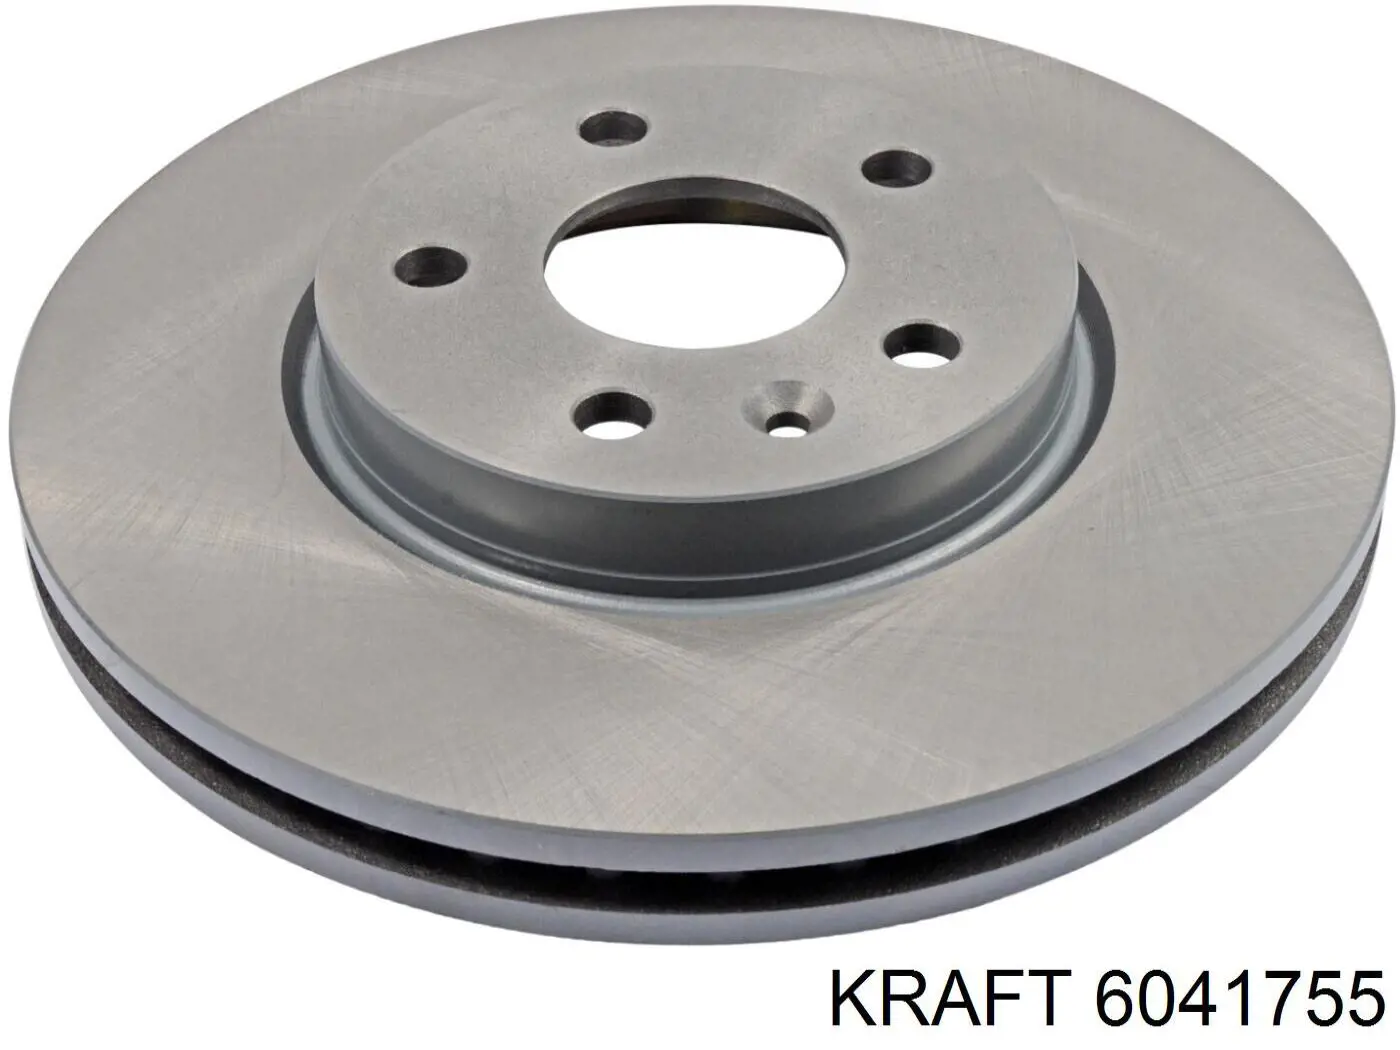 6041755 Kraft диск тормозной передний